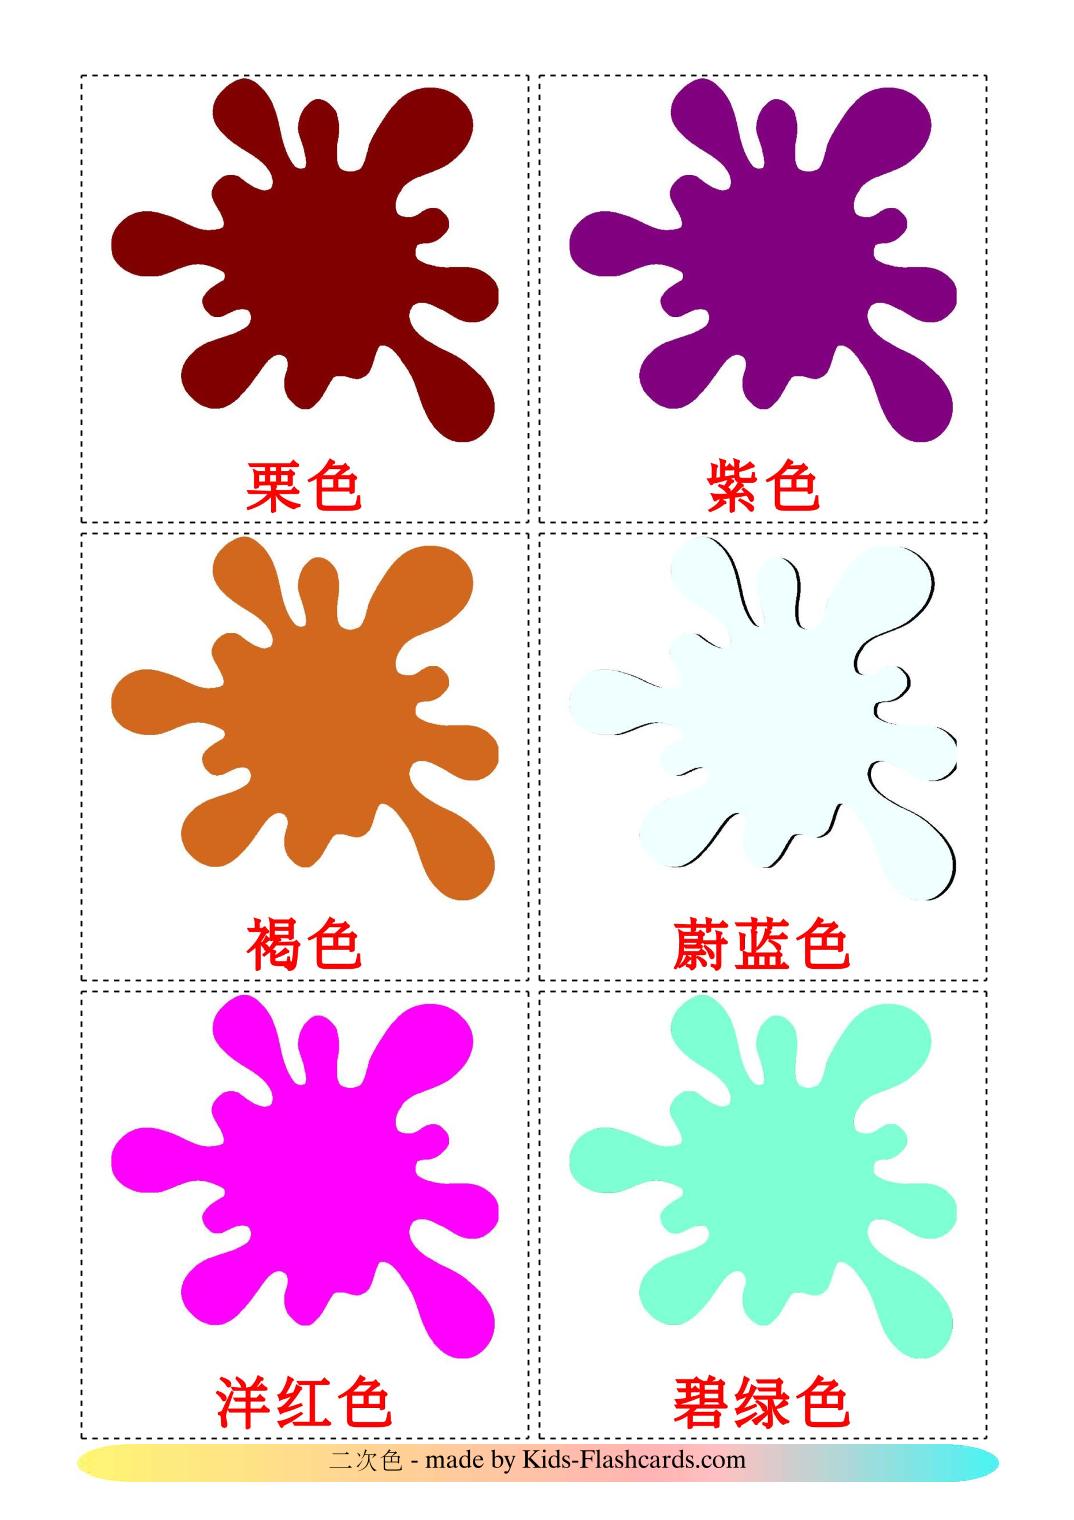 Colores secundarios - 20 fichas de chino(simplificado) para imprimir gratis 